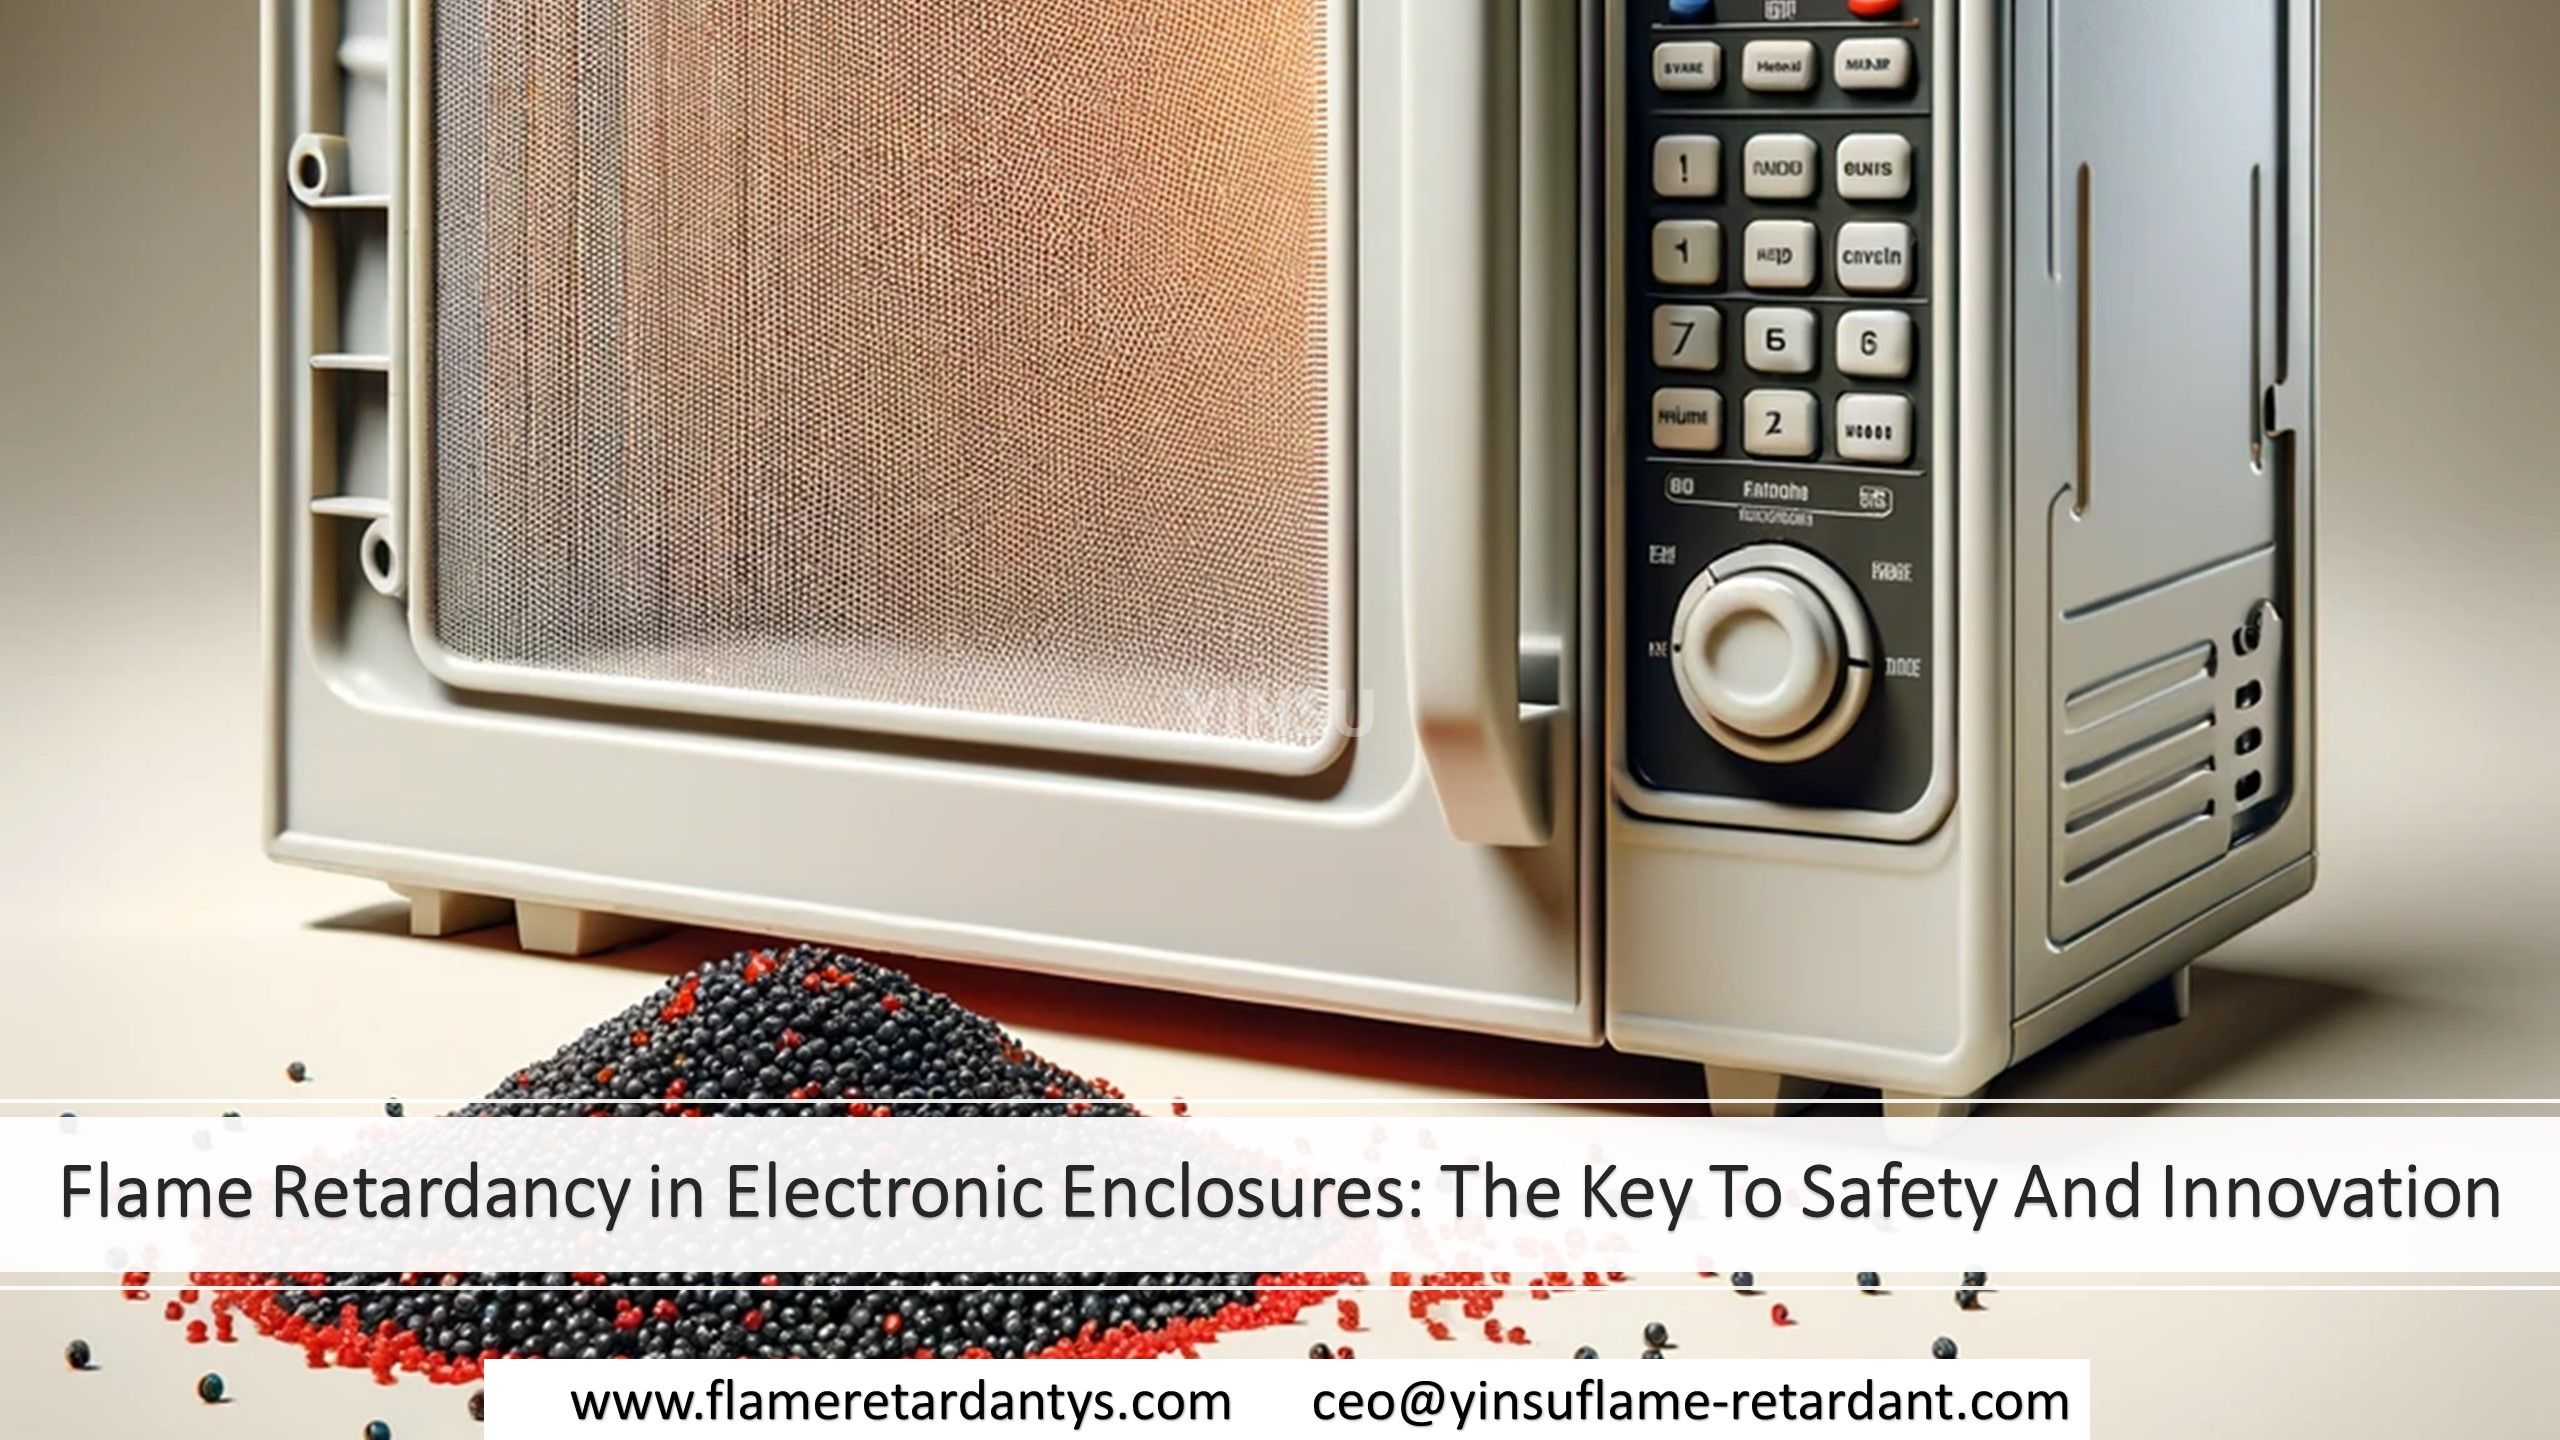 7.1 Огнестойкость электронных корпусов – ключ к безопасности и инновациям